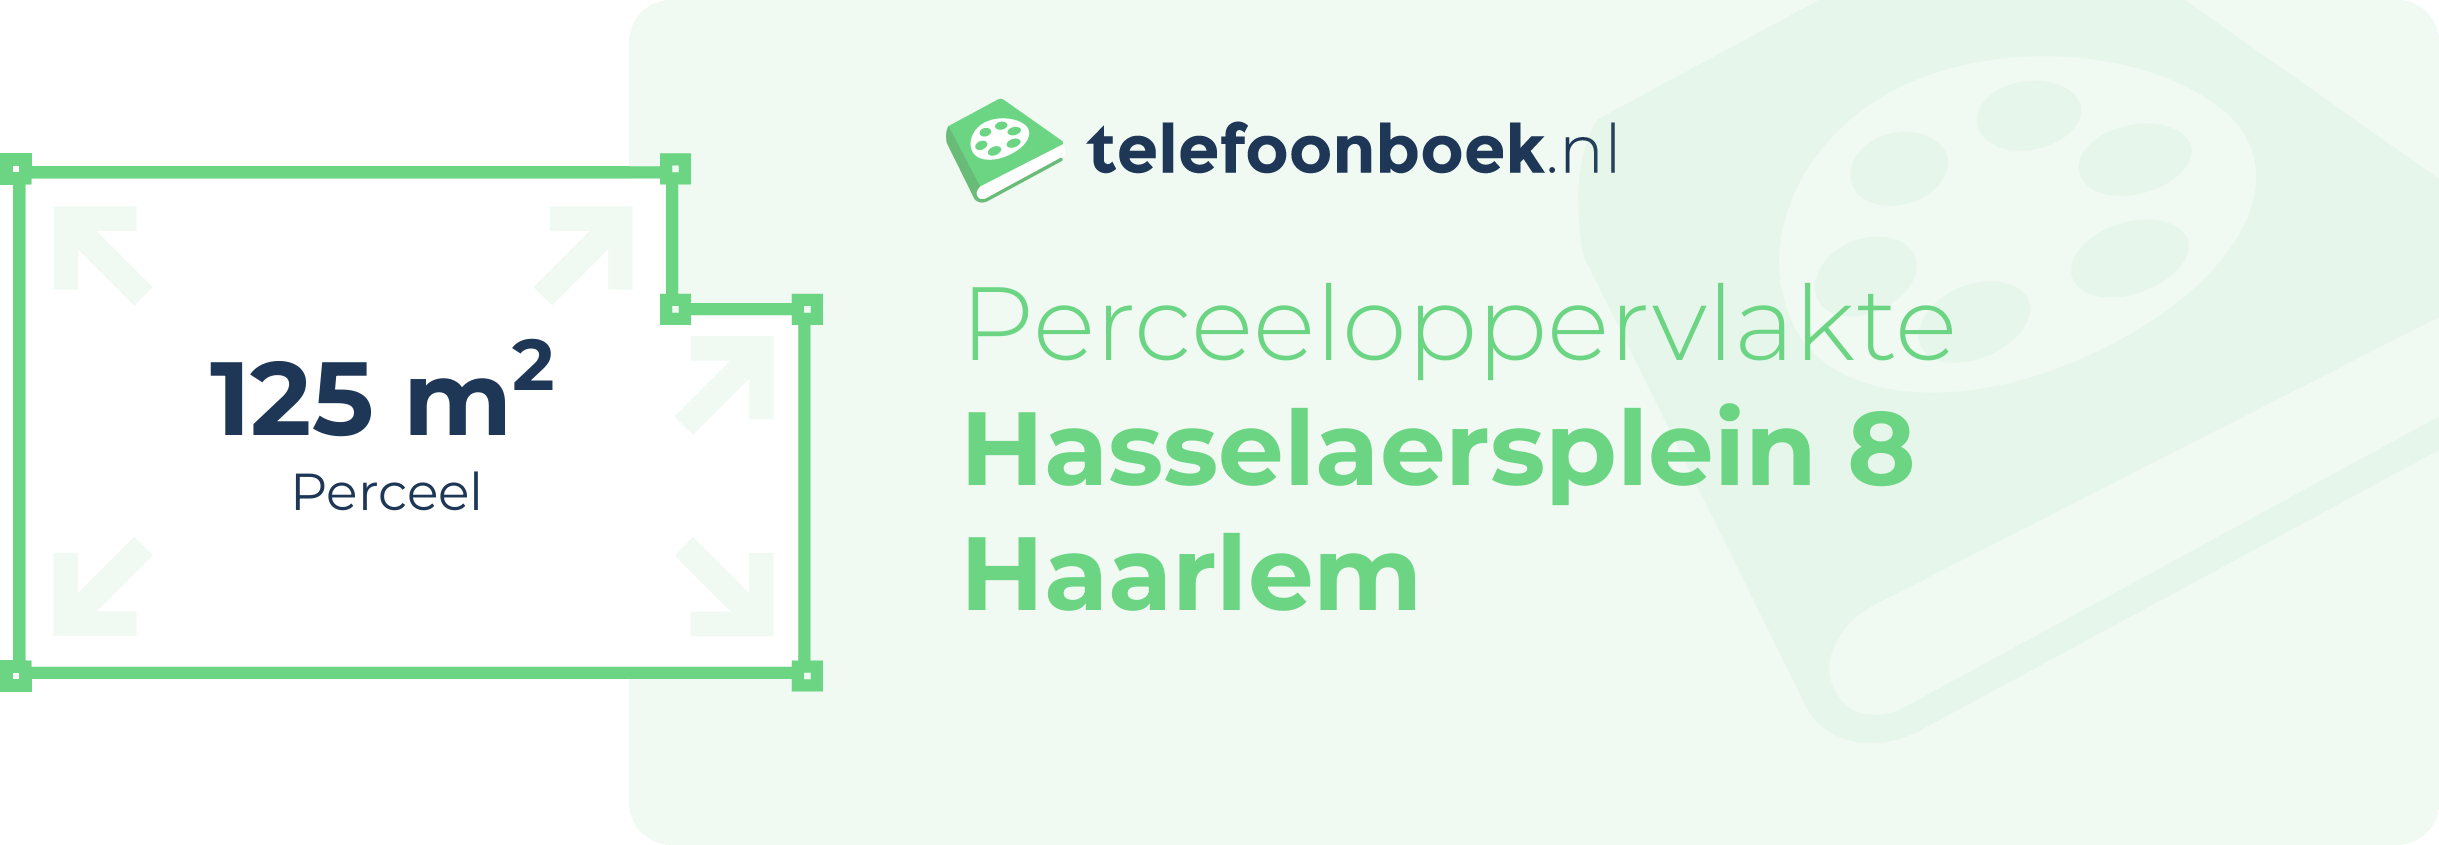 Perceeloppervlakte Hasselaersplein 8 Haarlem